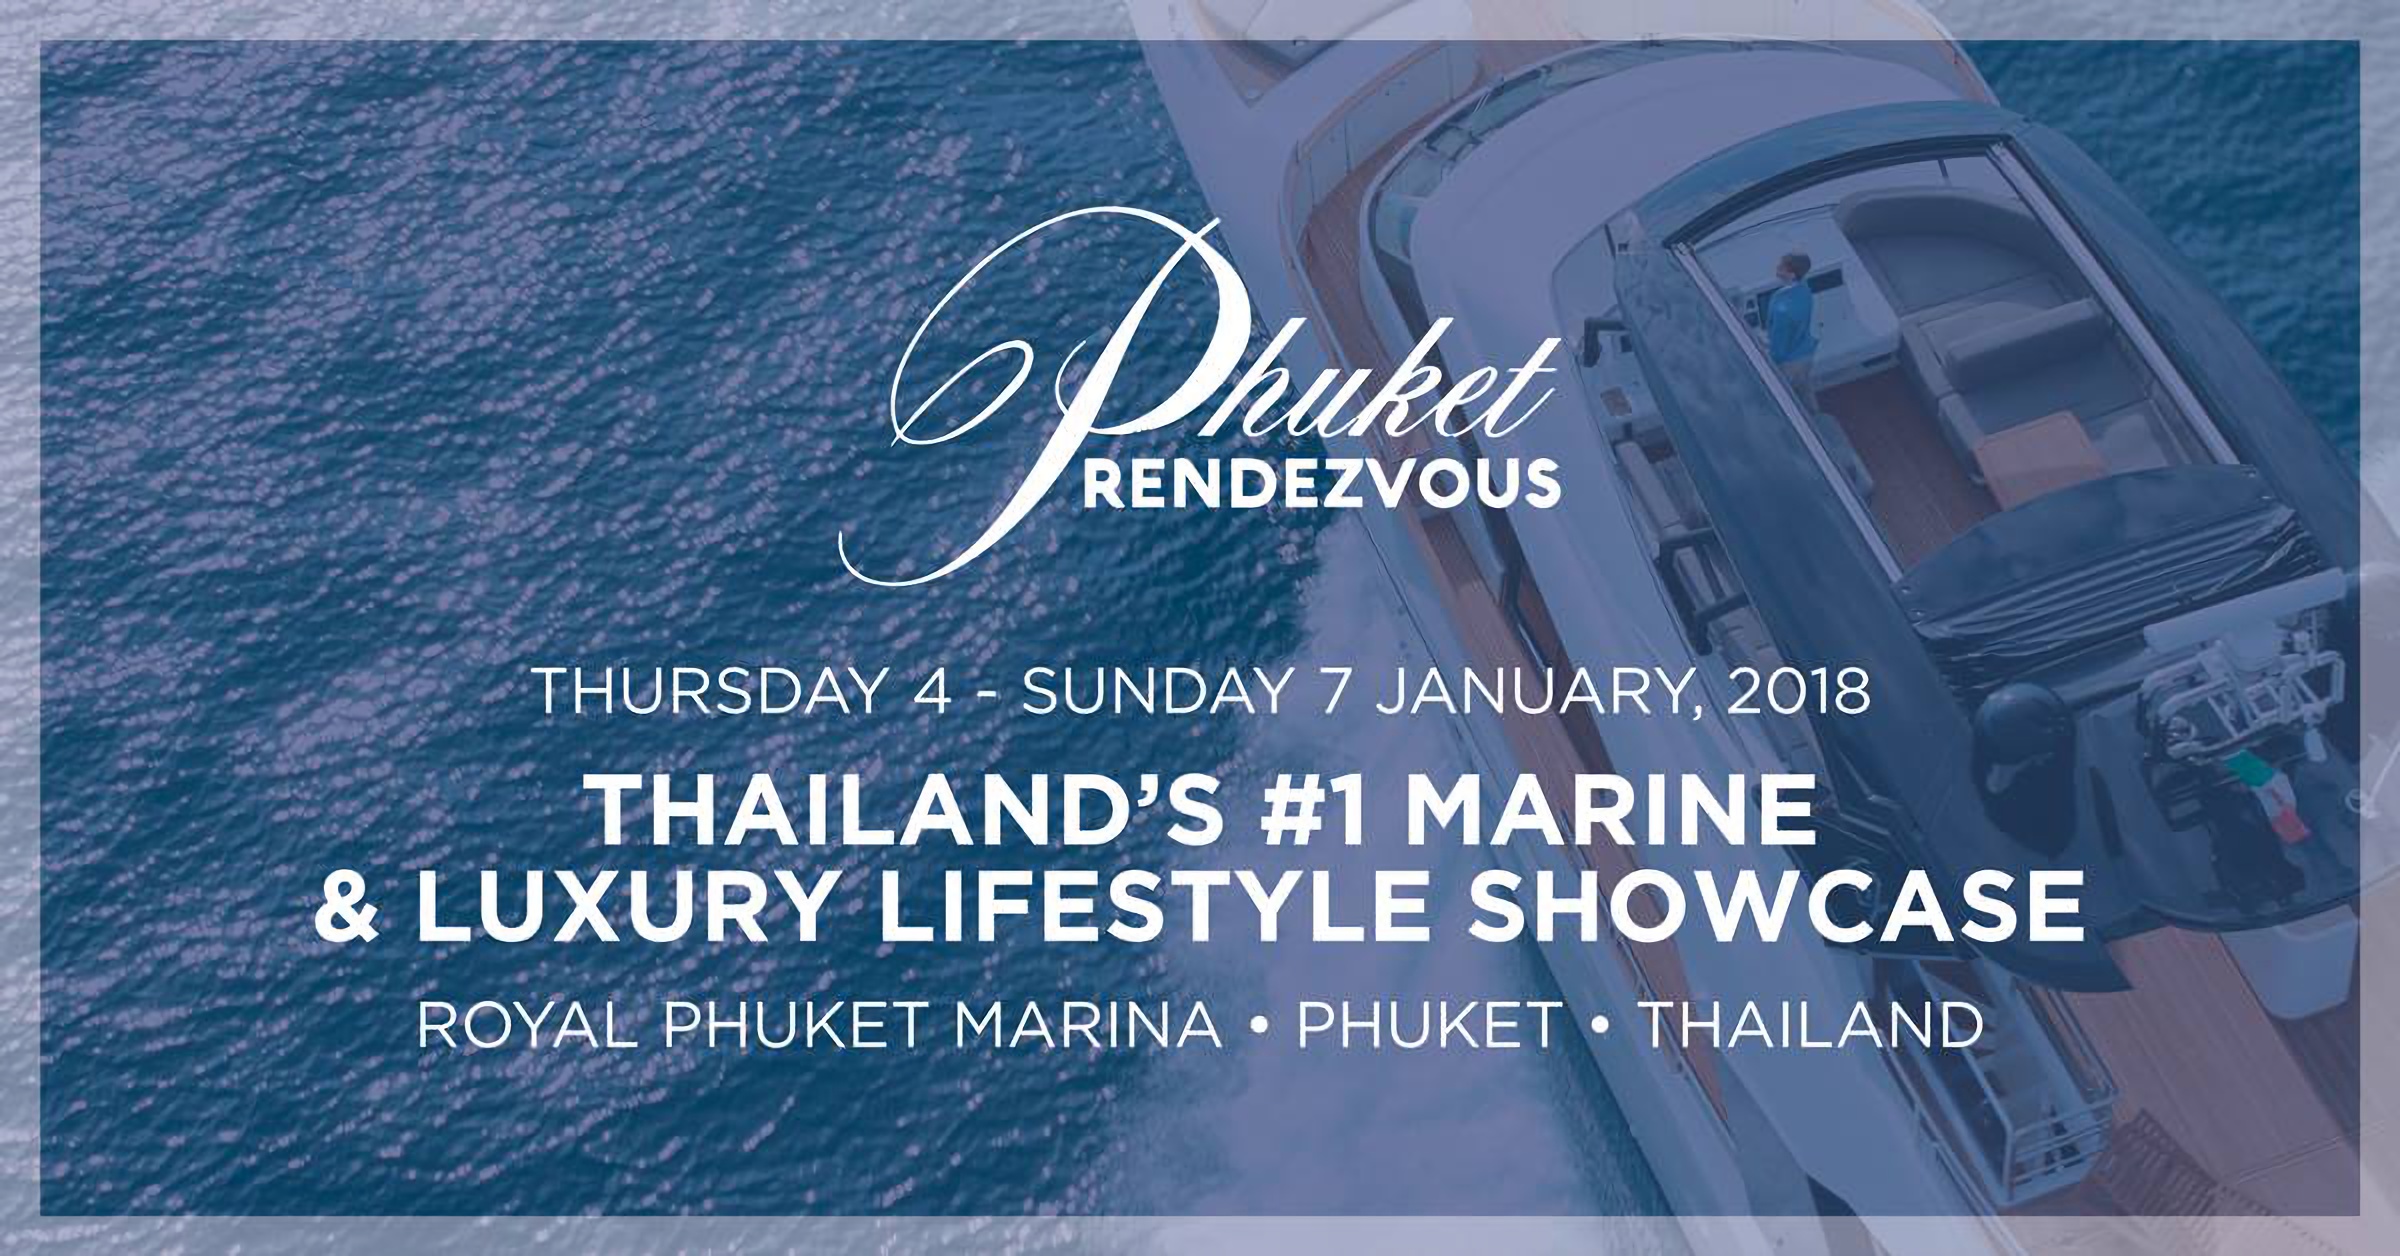 The inaugural Phuket RendezVous